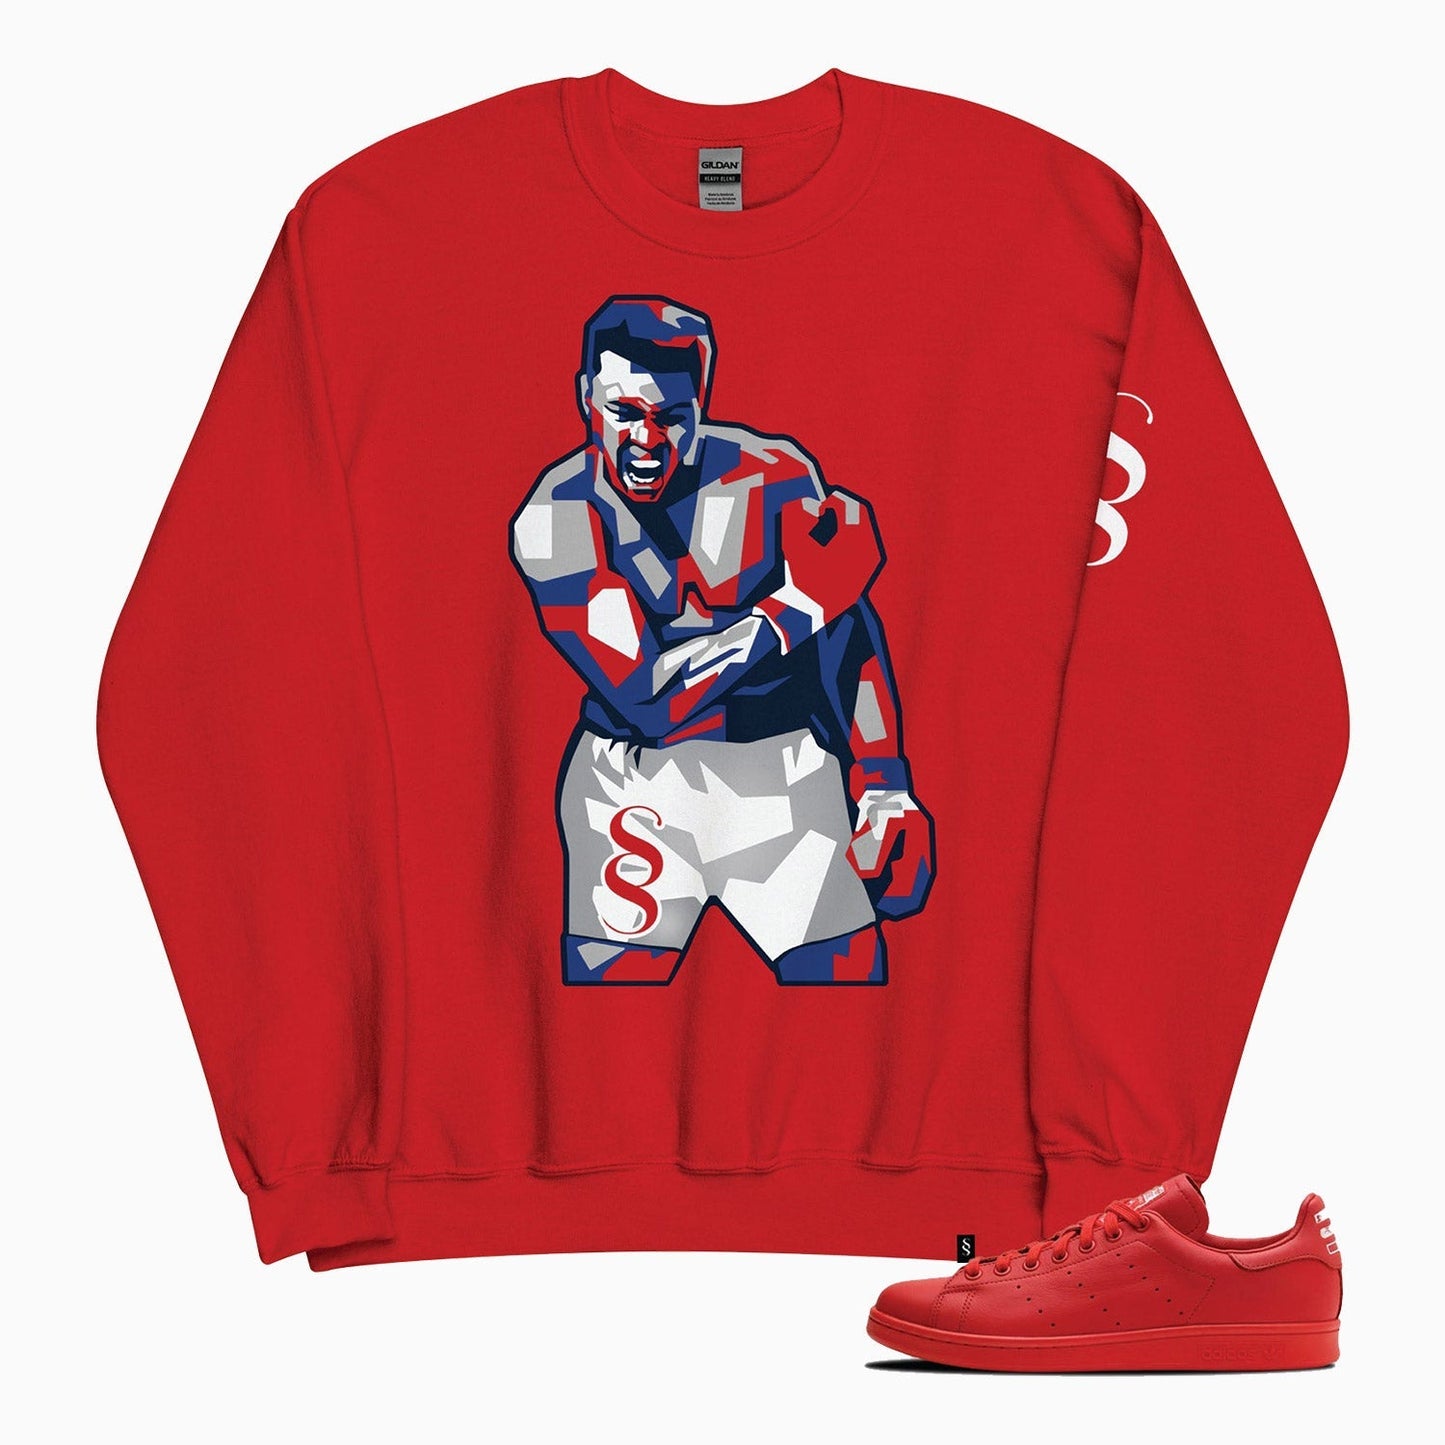 Men's Muhammad Ali Graphics Crew Neck Sweatshirt